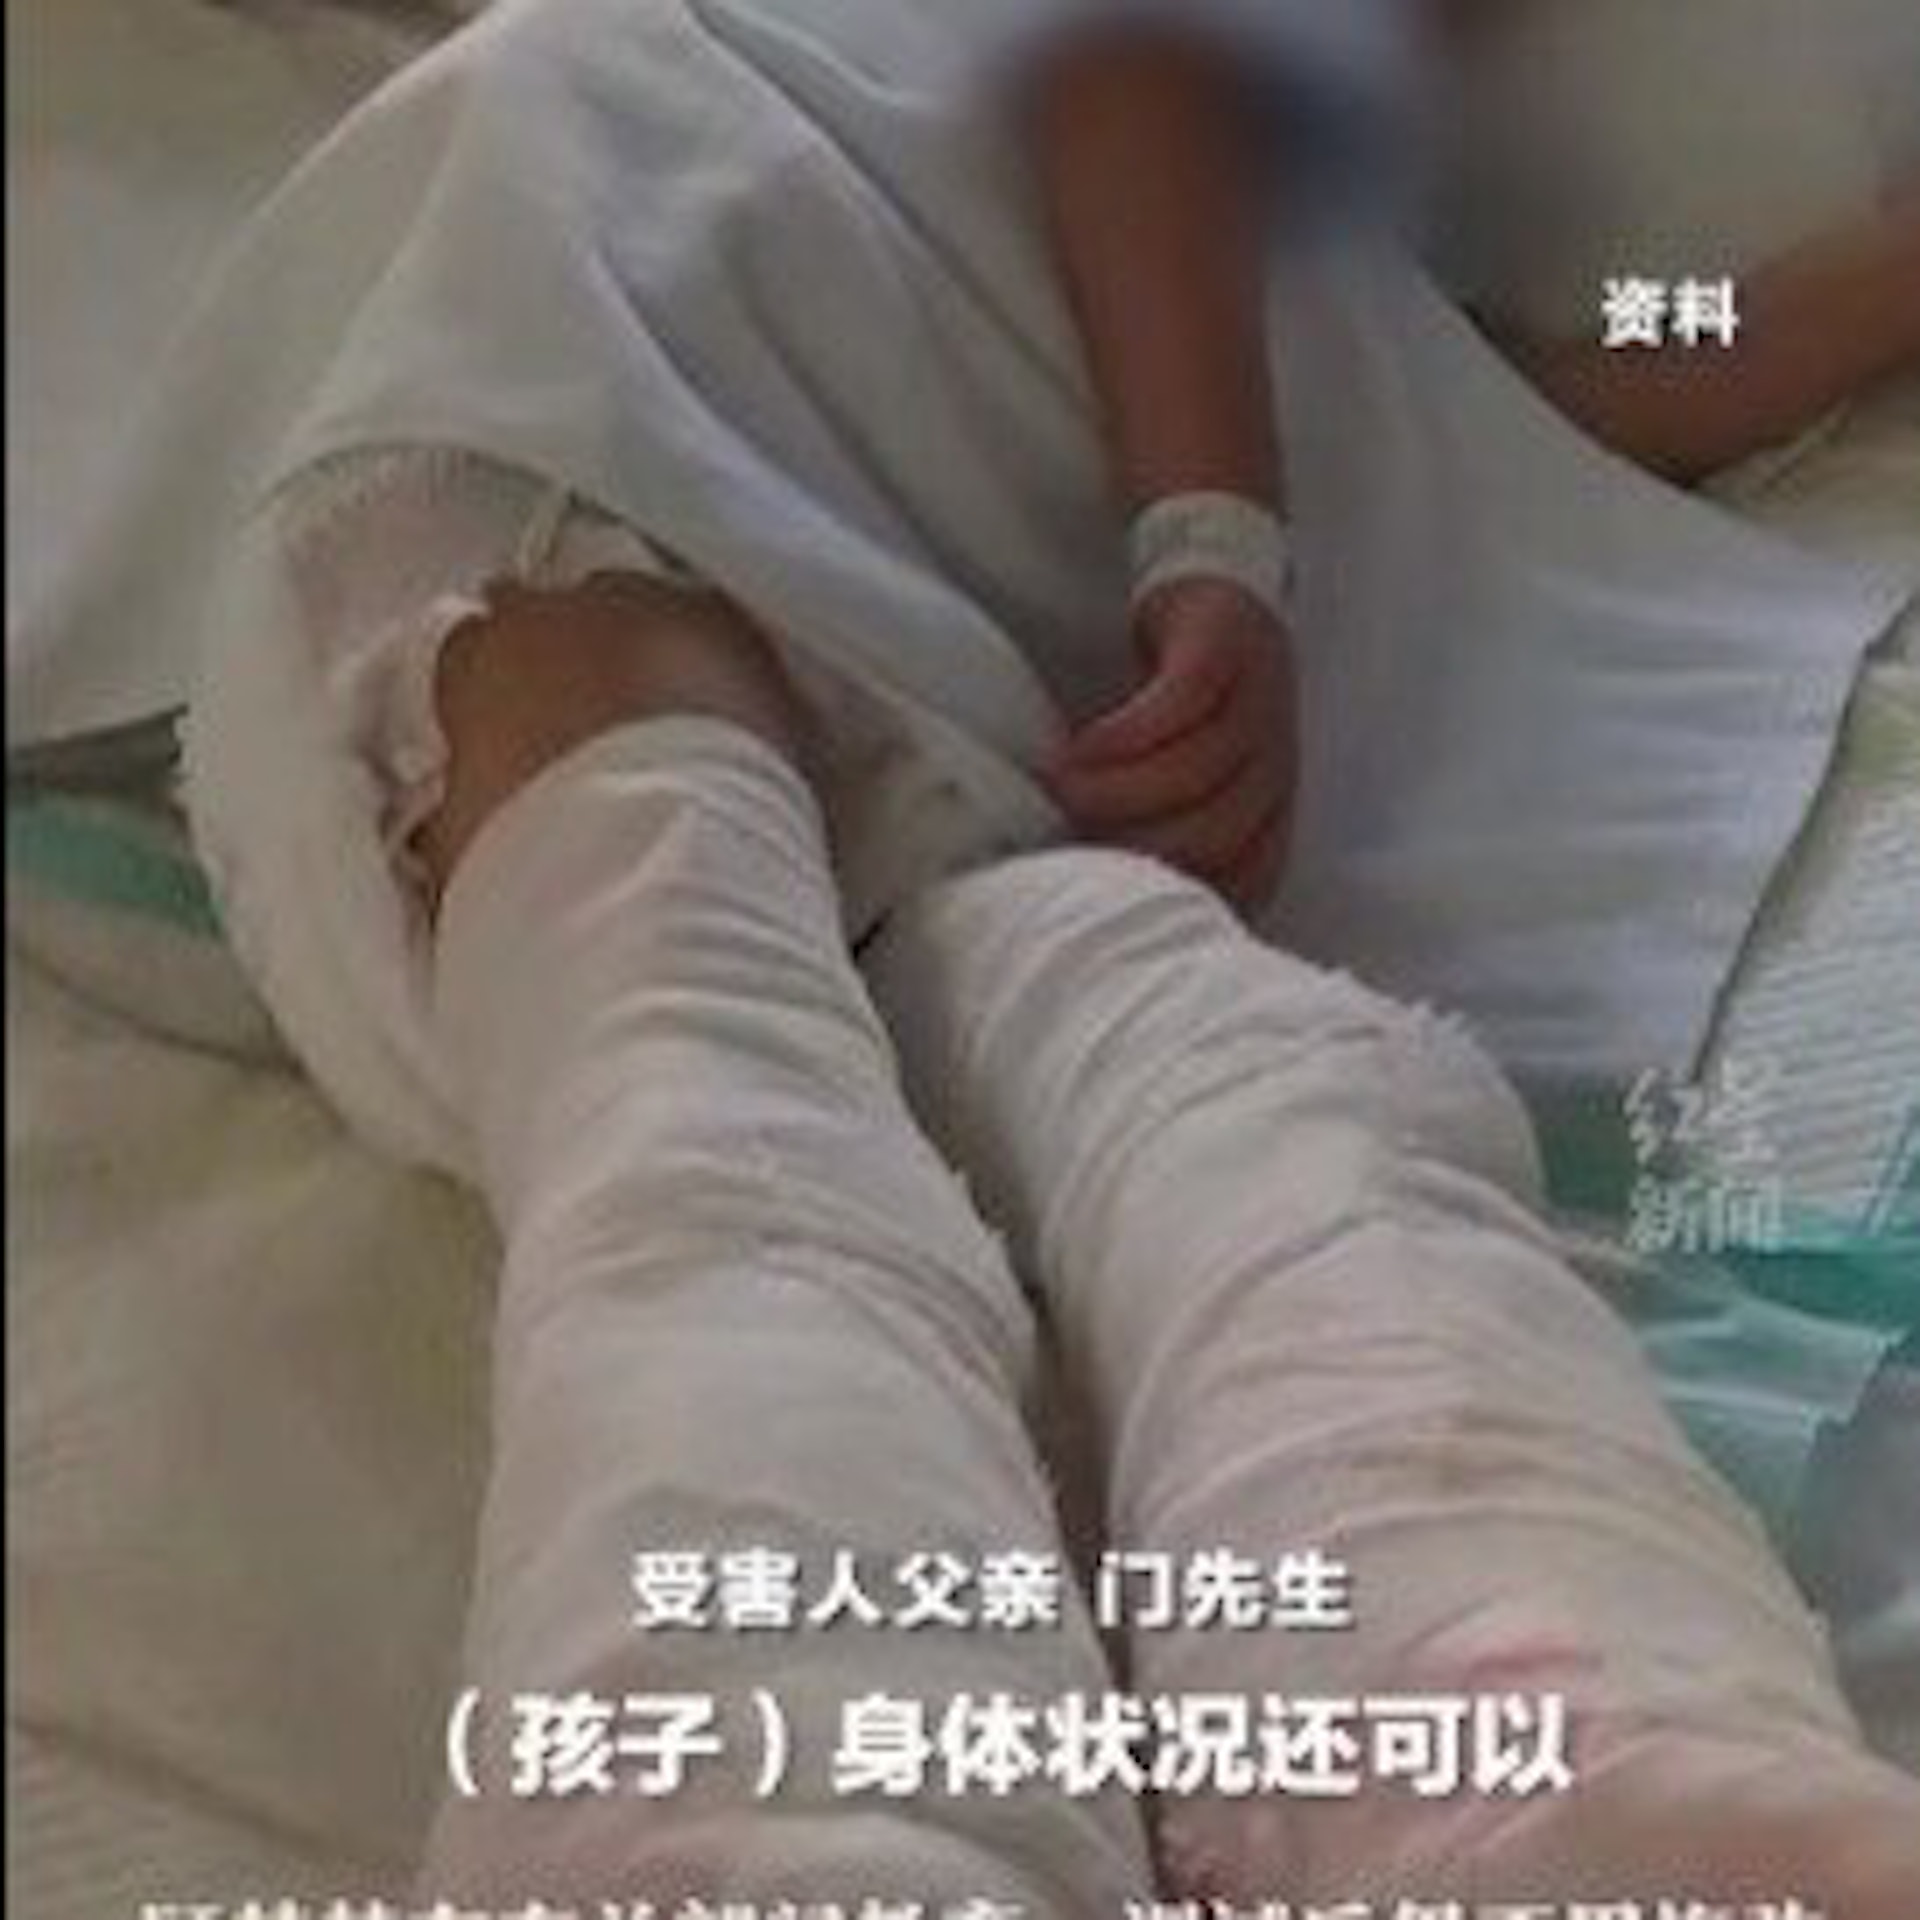 虐待5岁儿子致双腿截肢案:生母获刑6年9个月